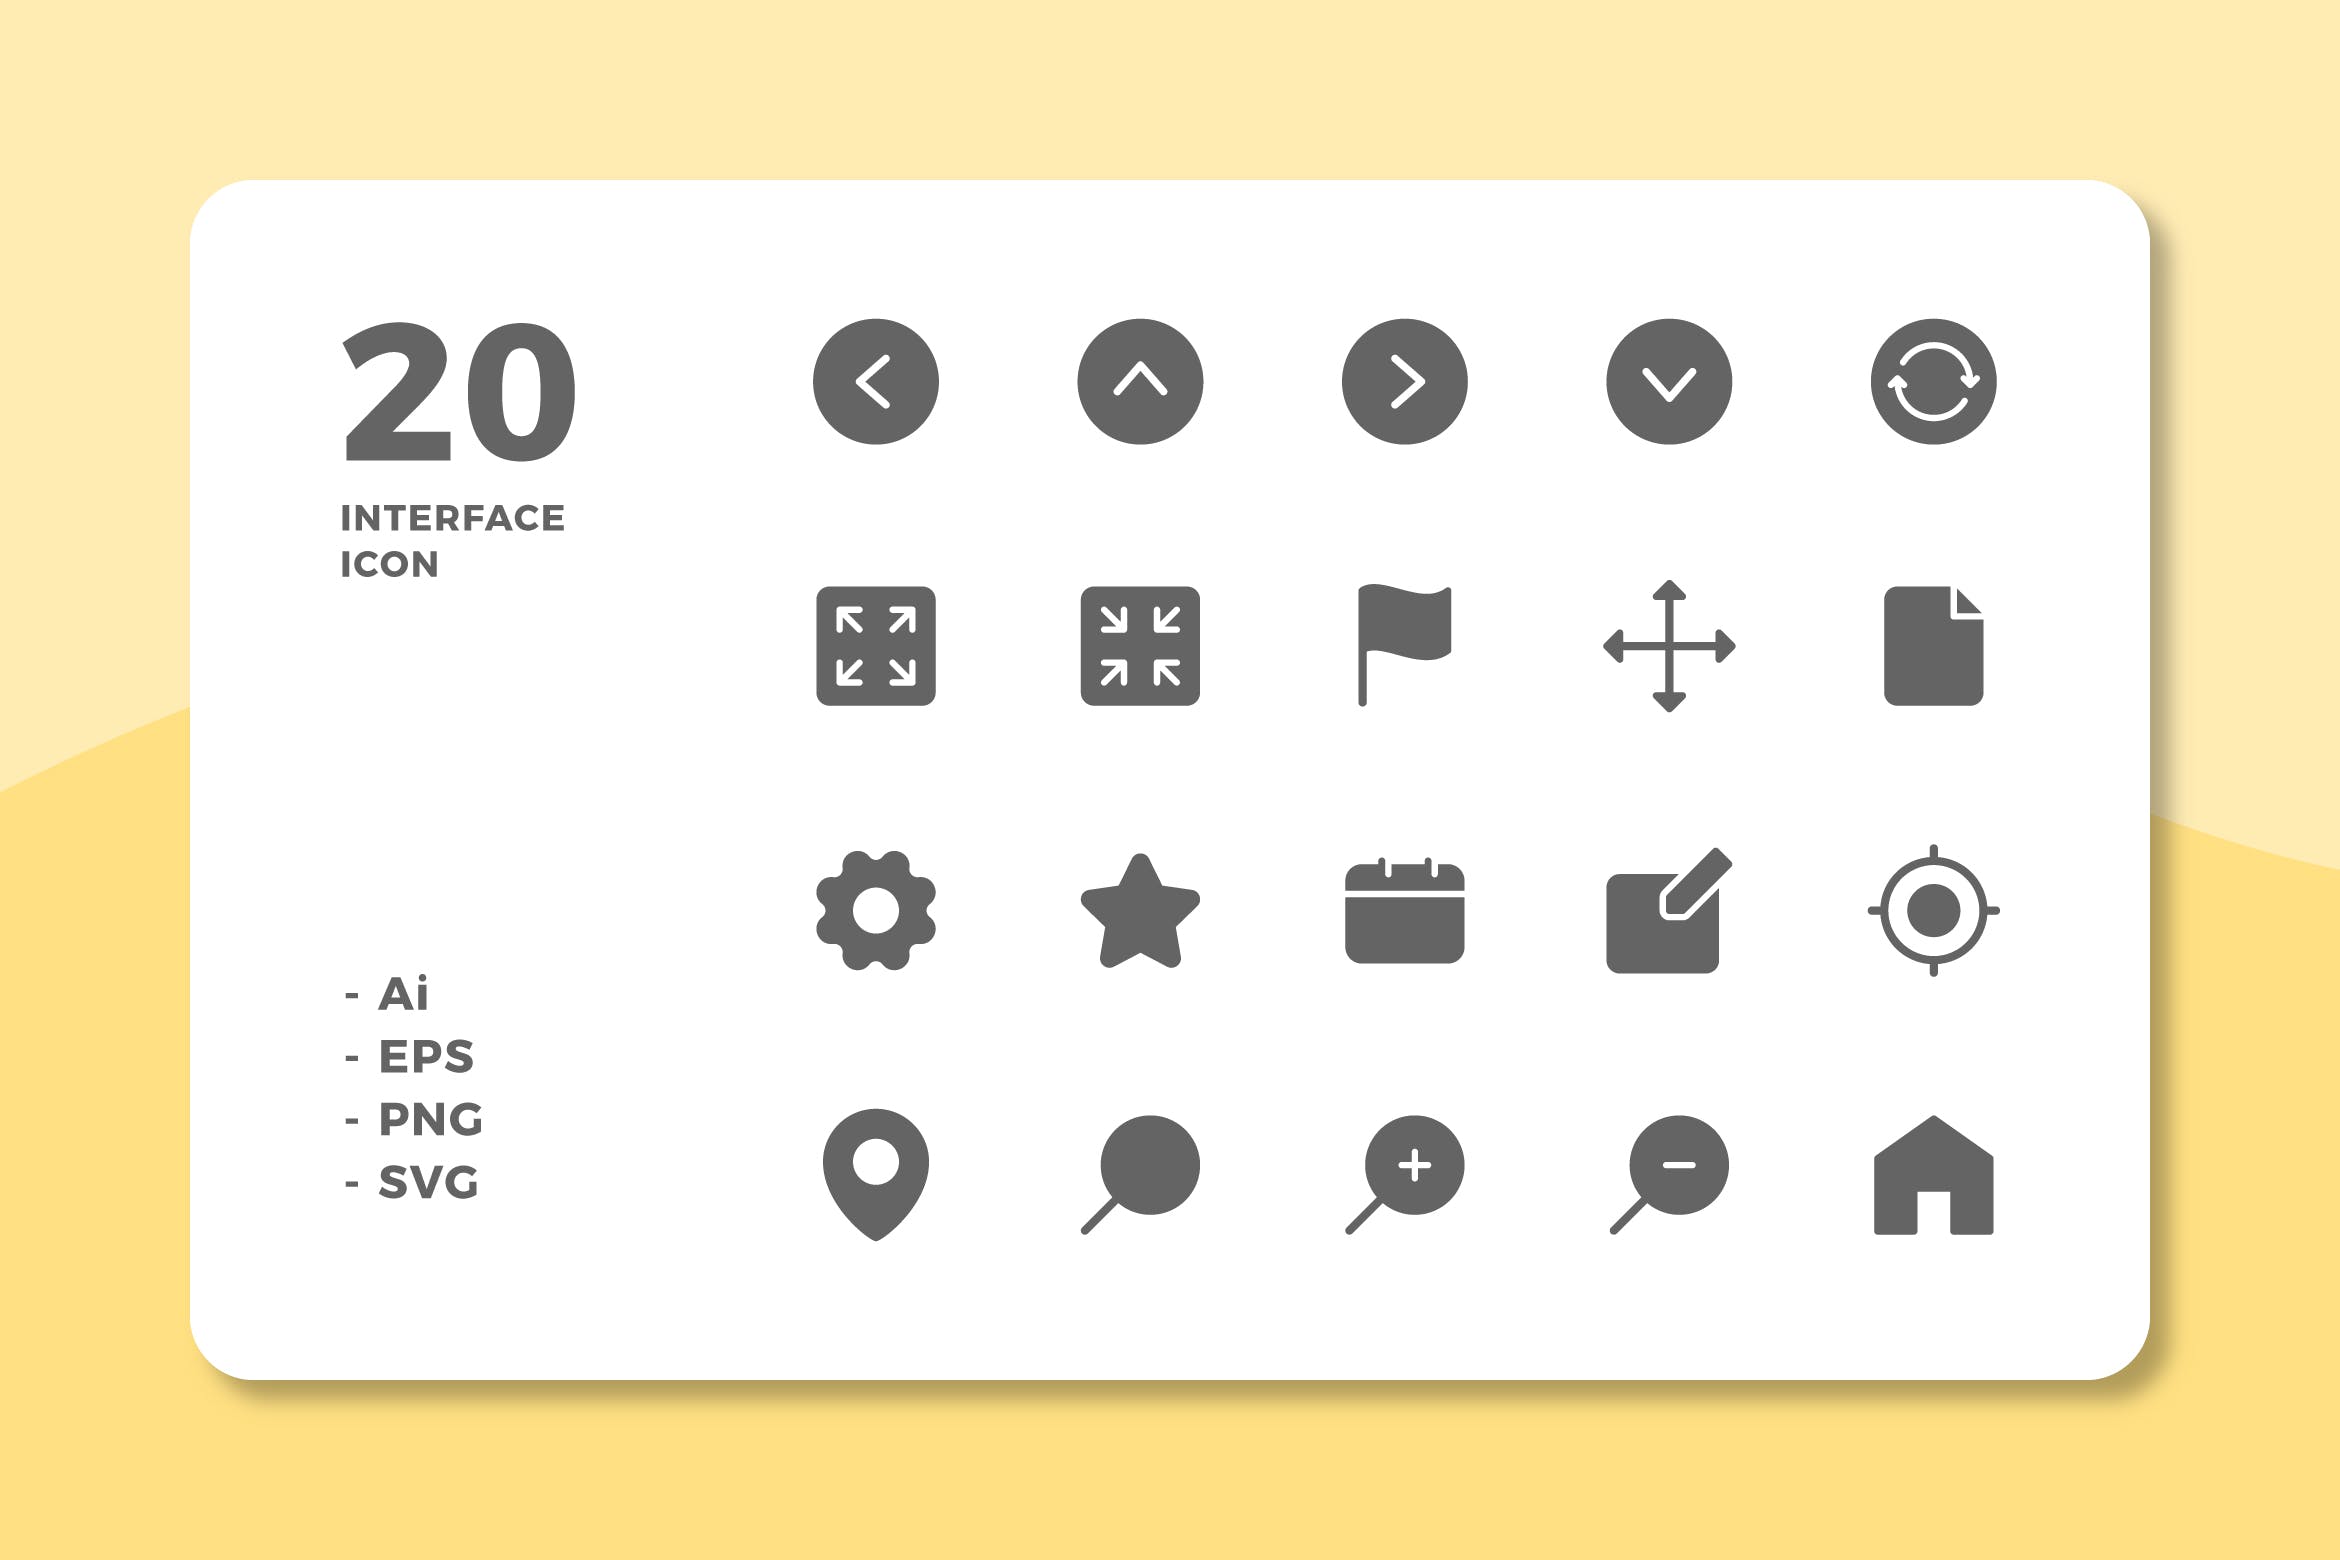 20枚UI界面设计APP操作选项亿图网易图库精选图标v1 20 Interface Icons Vol.1 (Solid)插图